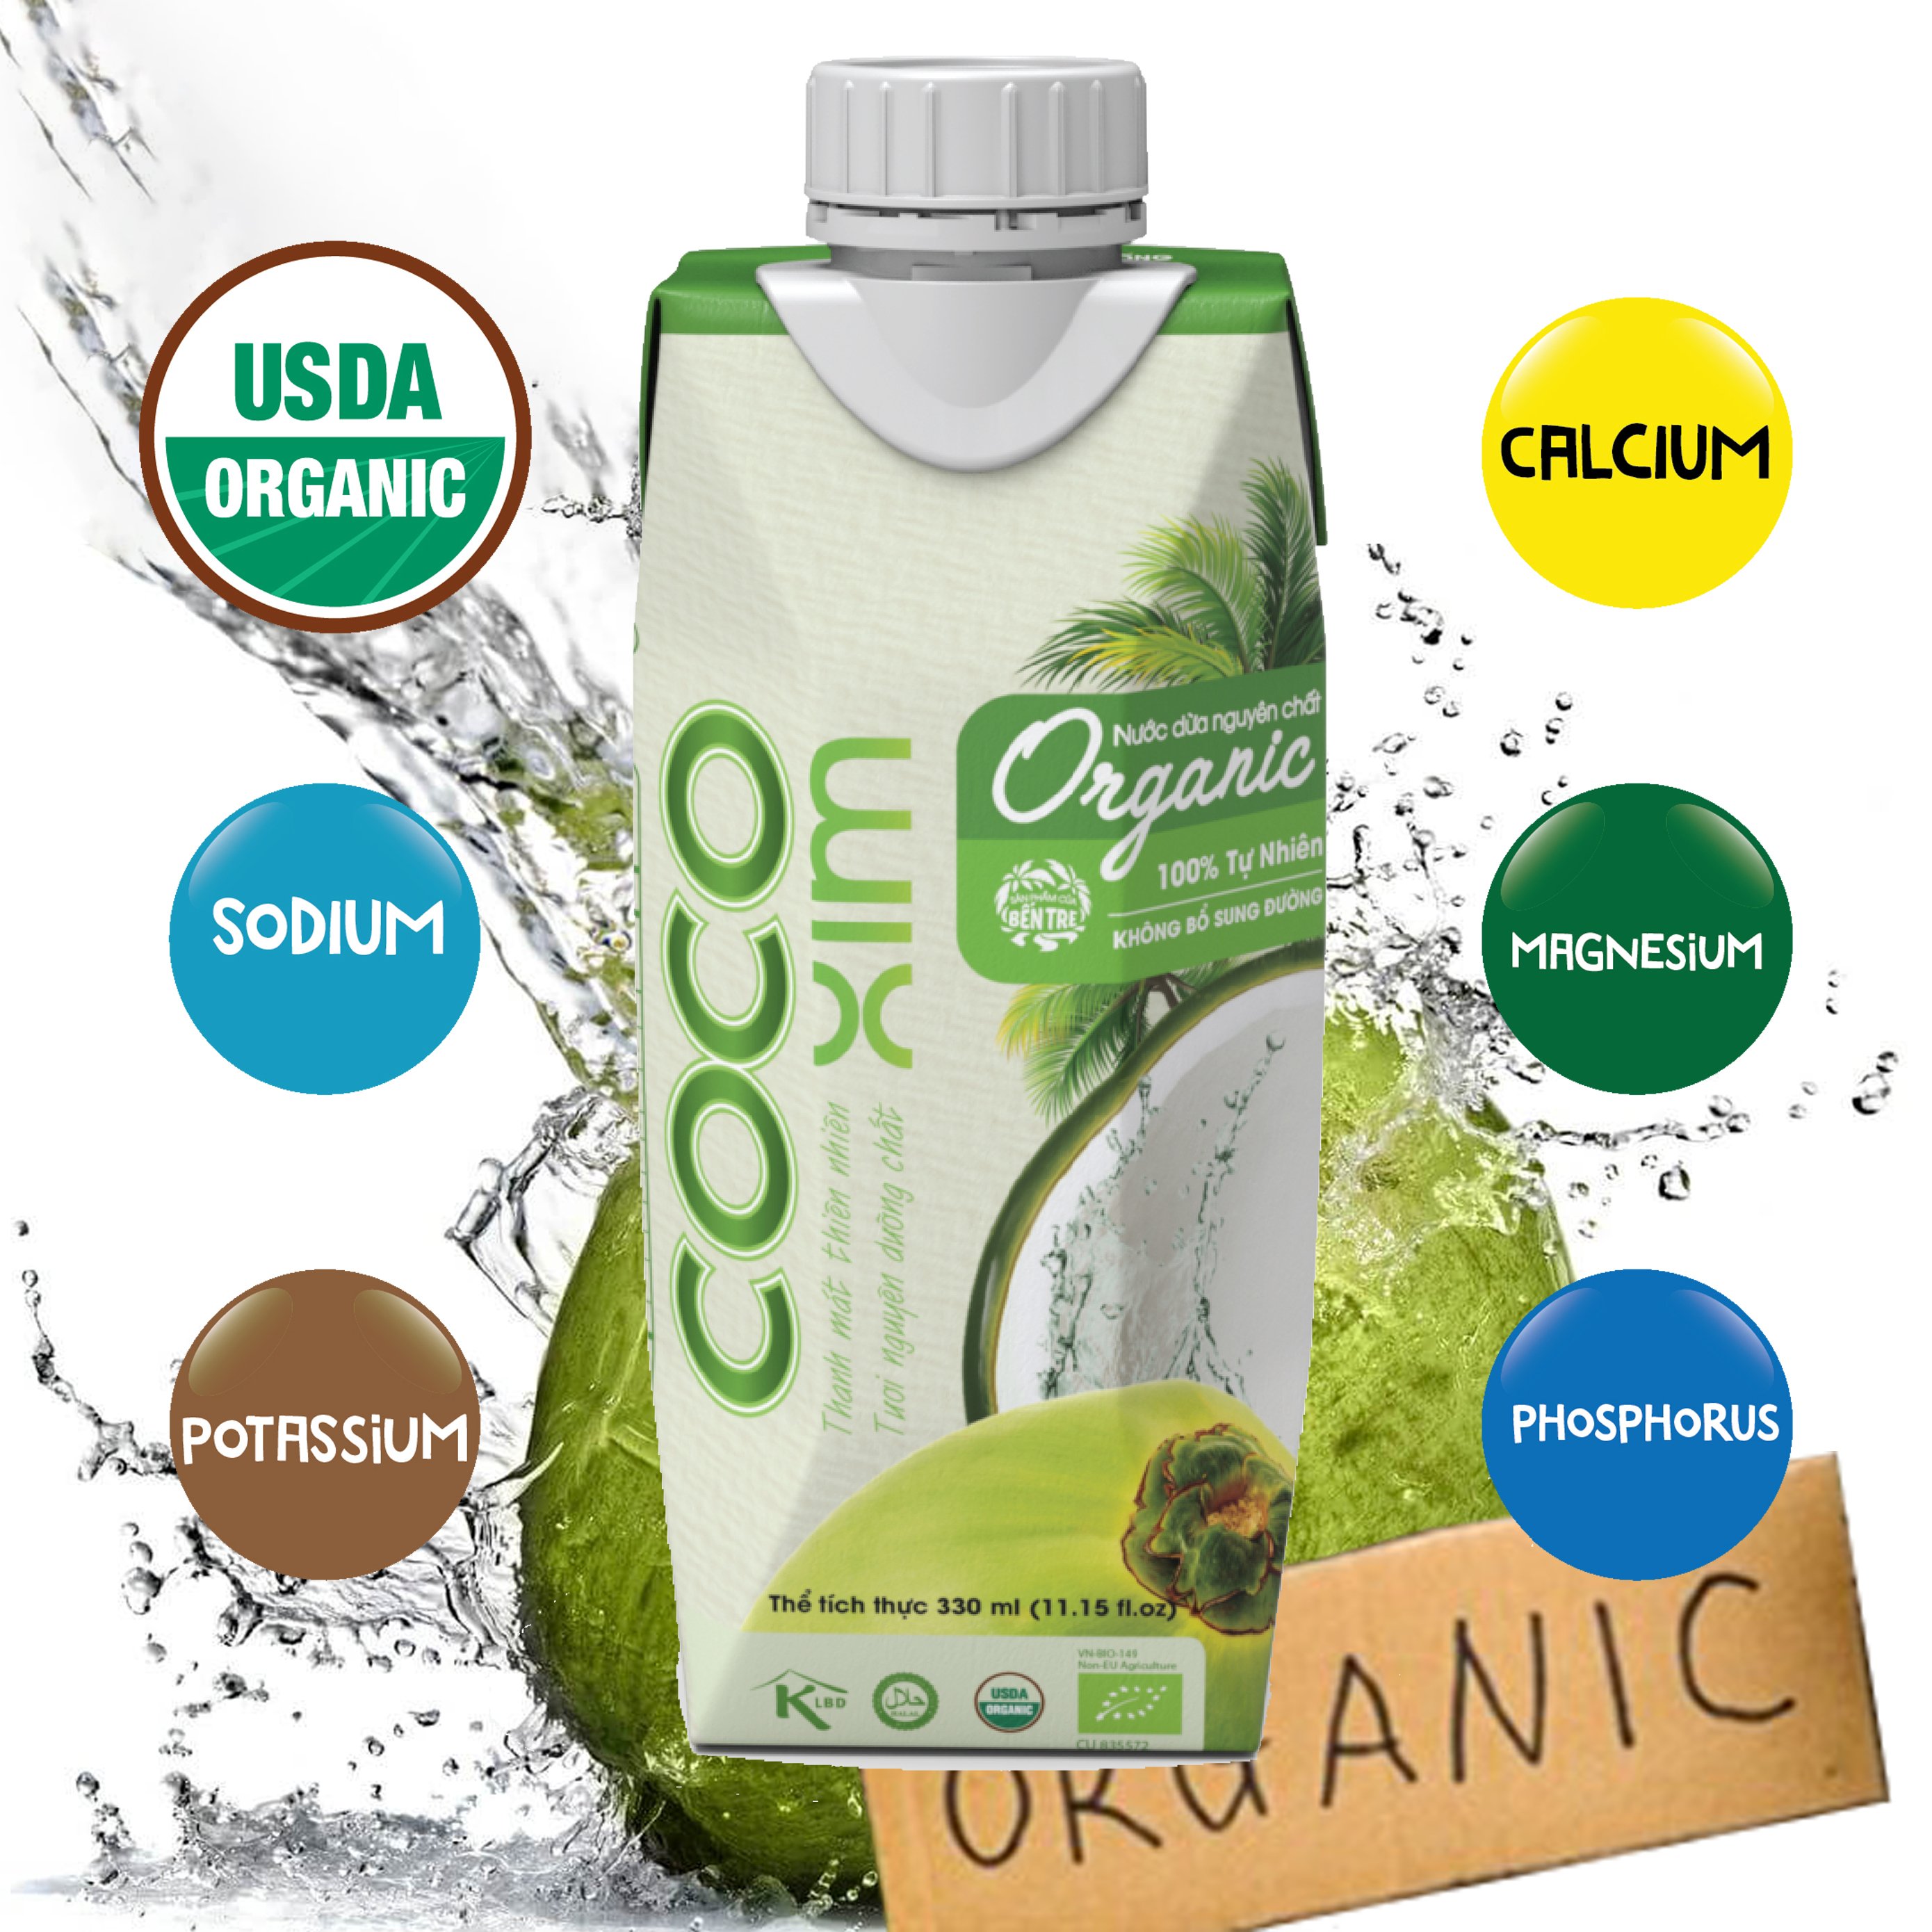 Nước dừa đóng hộp Organic 100- dừa tươi nguyên chất